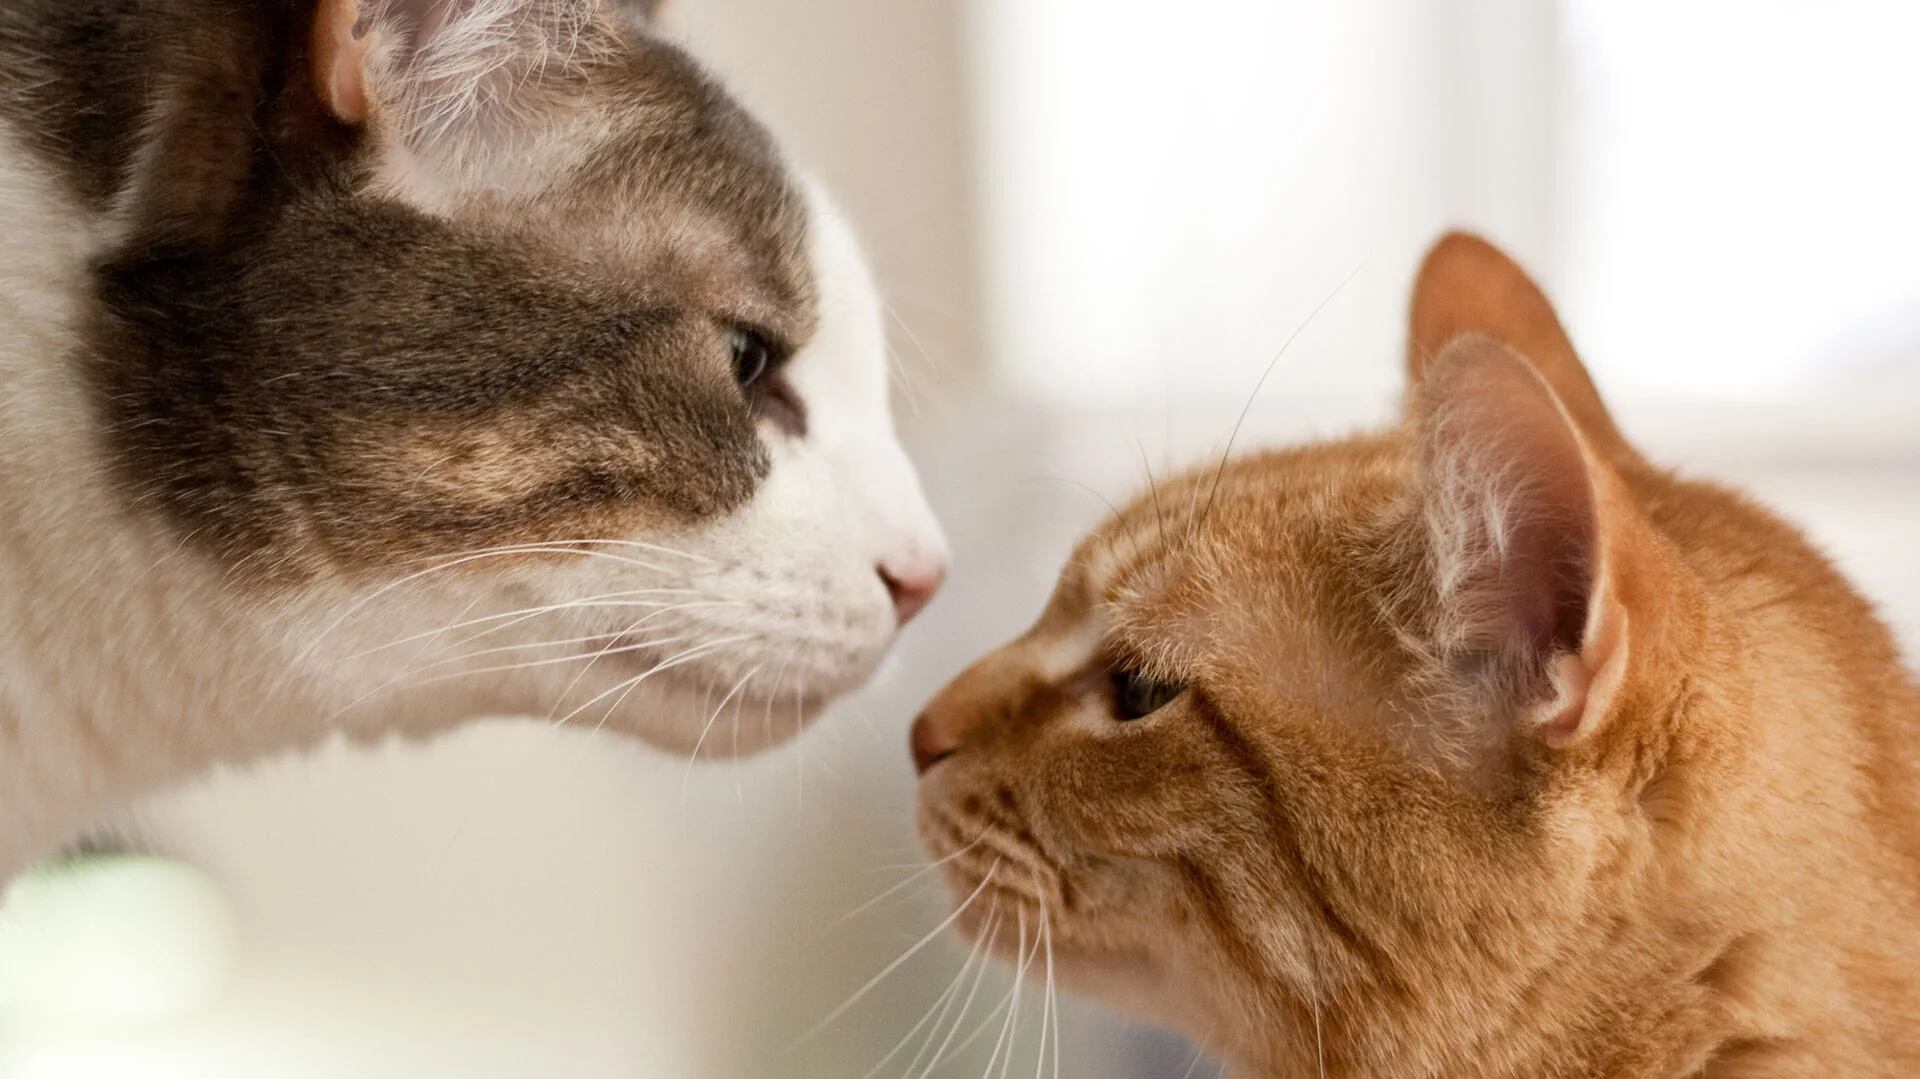 Estos hallazgos profundizan en la comprensión de cómo la evolución de canales más enrevesados permitió a los mamíferos, especialmente a los gatos, mejorar su sentido del olfato (Getty Images)